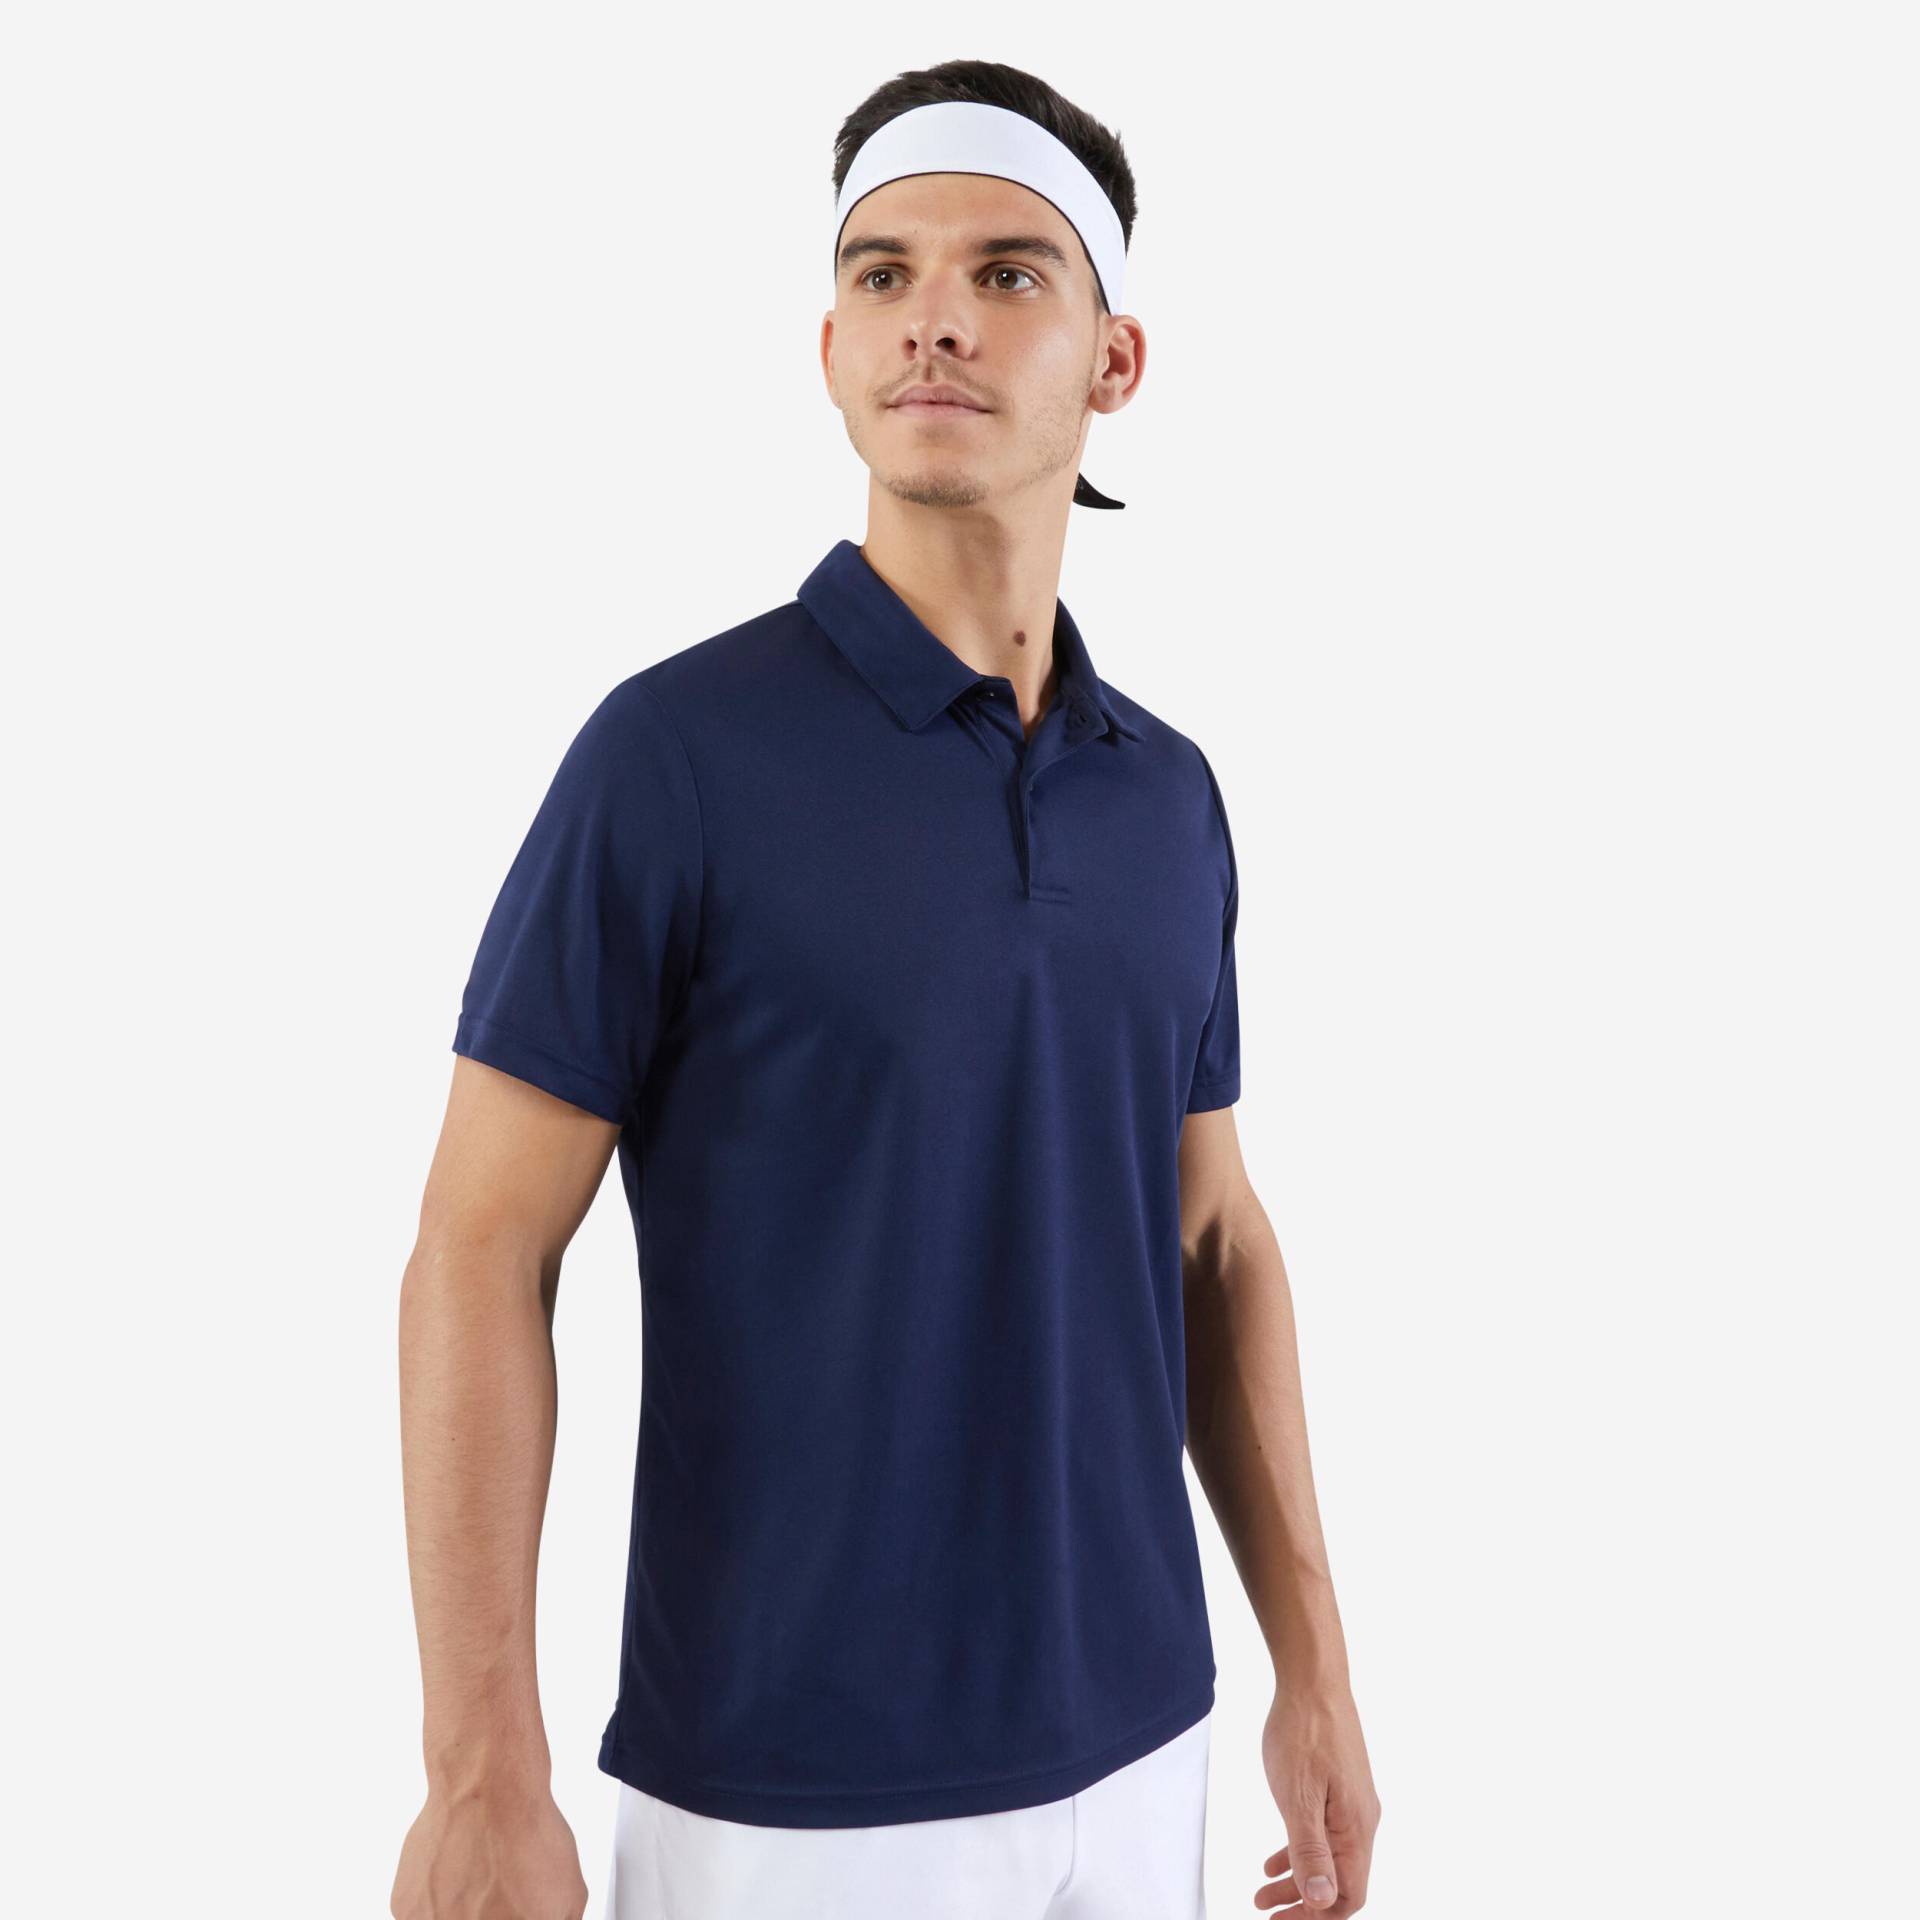 Herren Poloshirt kurzarm Tennis - Essential marineblau von ARTENGO